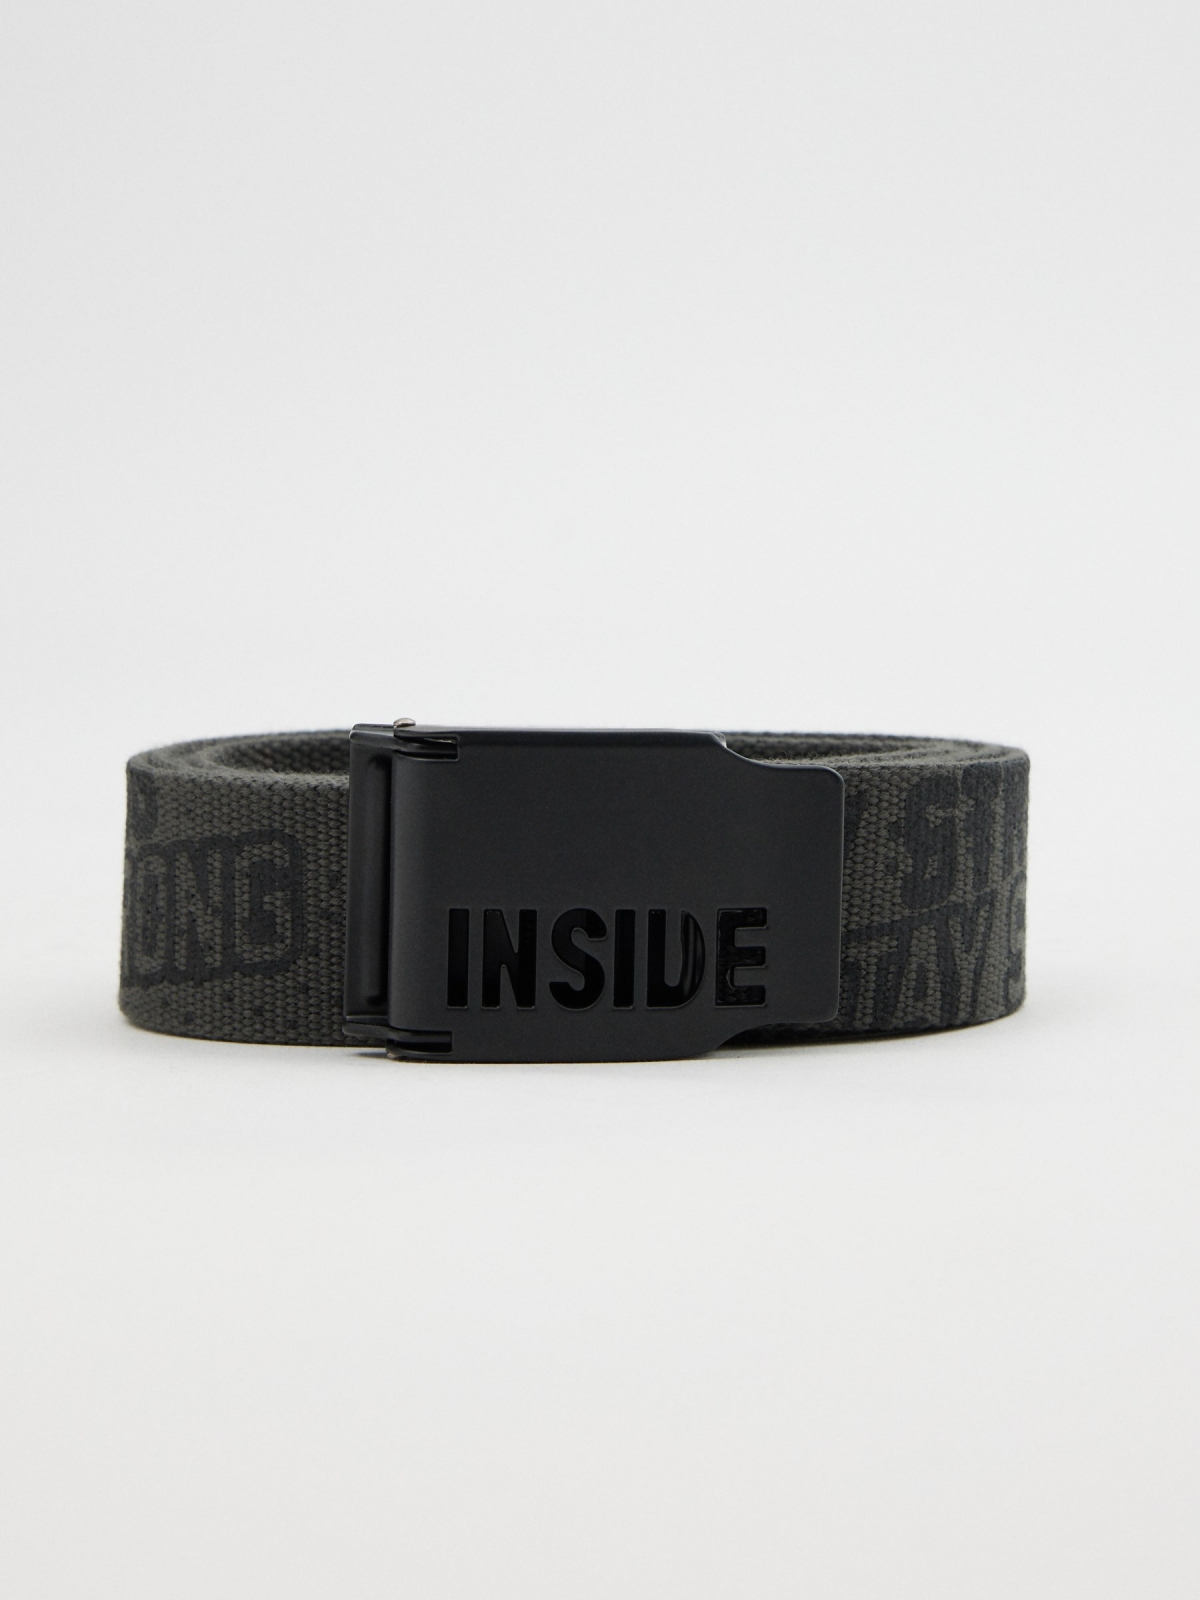 Cinturón de lona print INSIDE gris oscuro